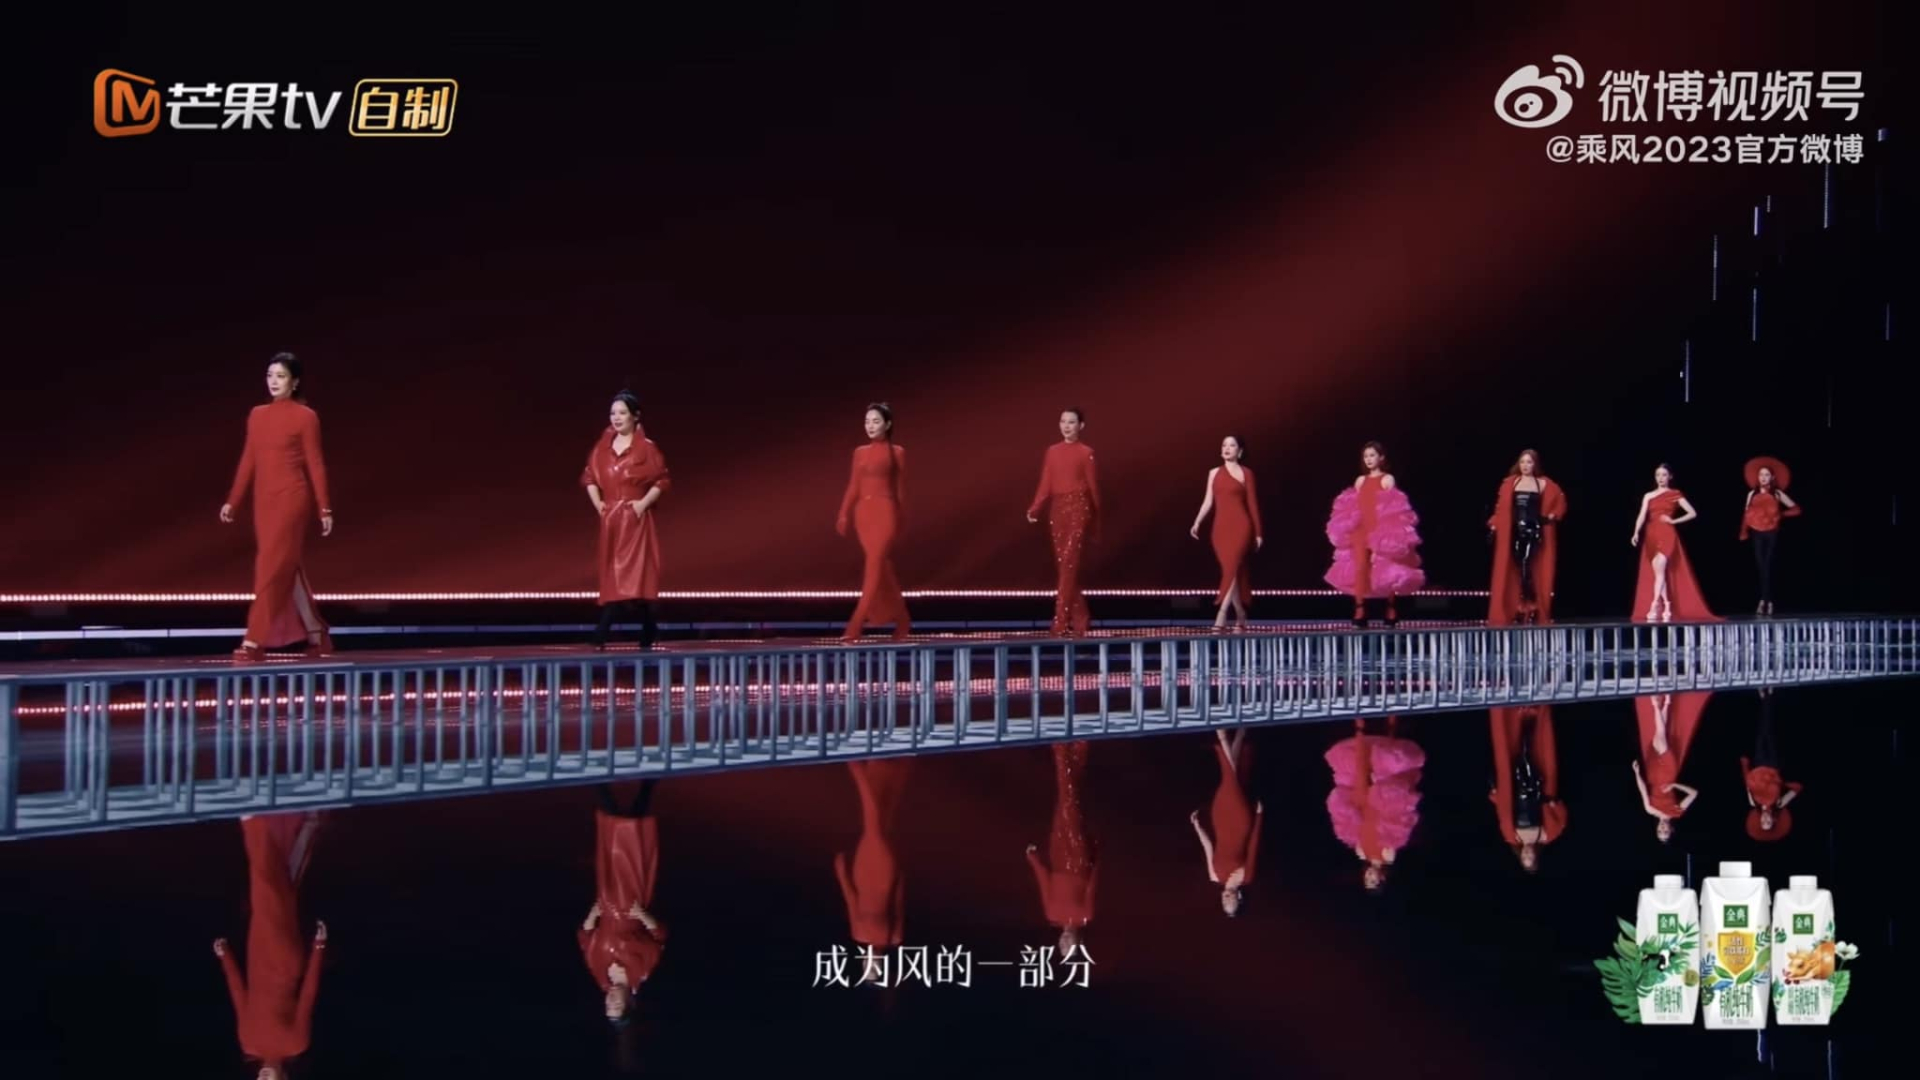 Chi Pu khiến netizen xứ Trung xôn xao khi được xếp diễn hàng đầu, xuất hiện sáng bừng sân khấu - ảnh 2